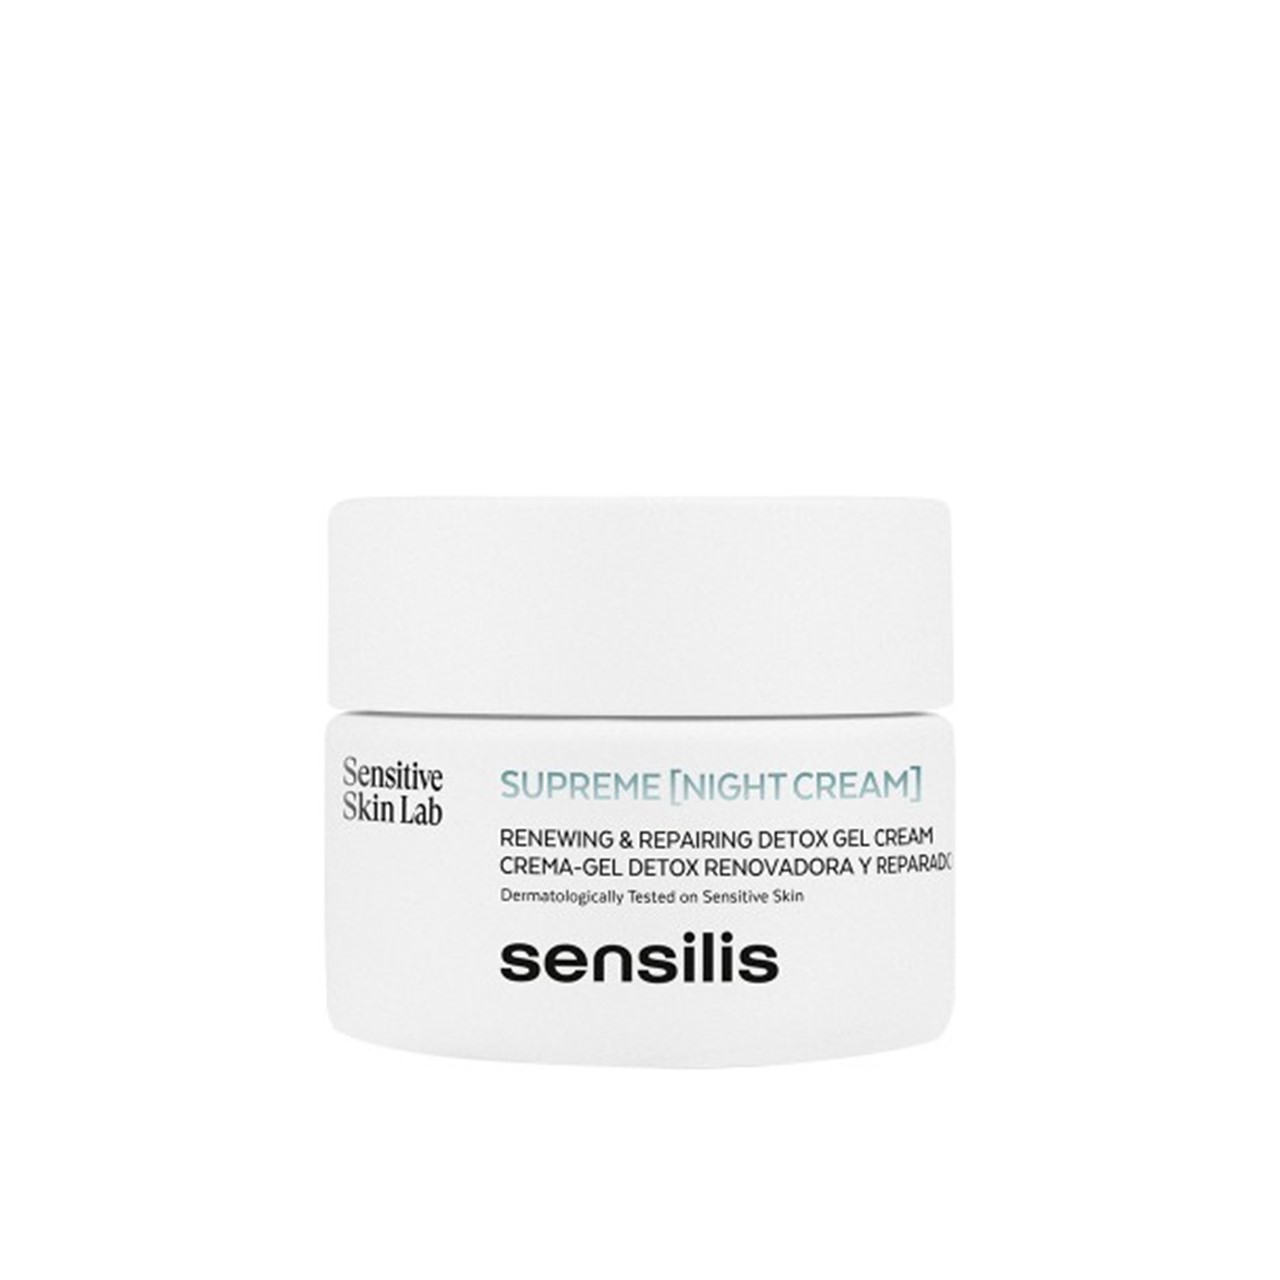 Sensilis Supreme [Night Cream] Detox Gel Cream 50ml